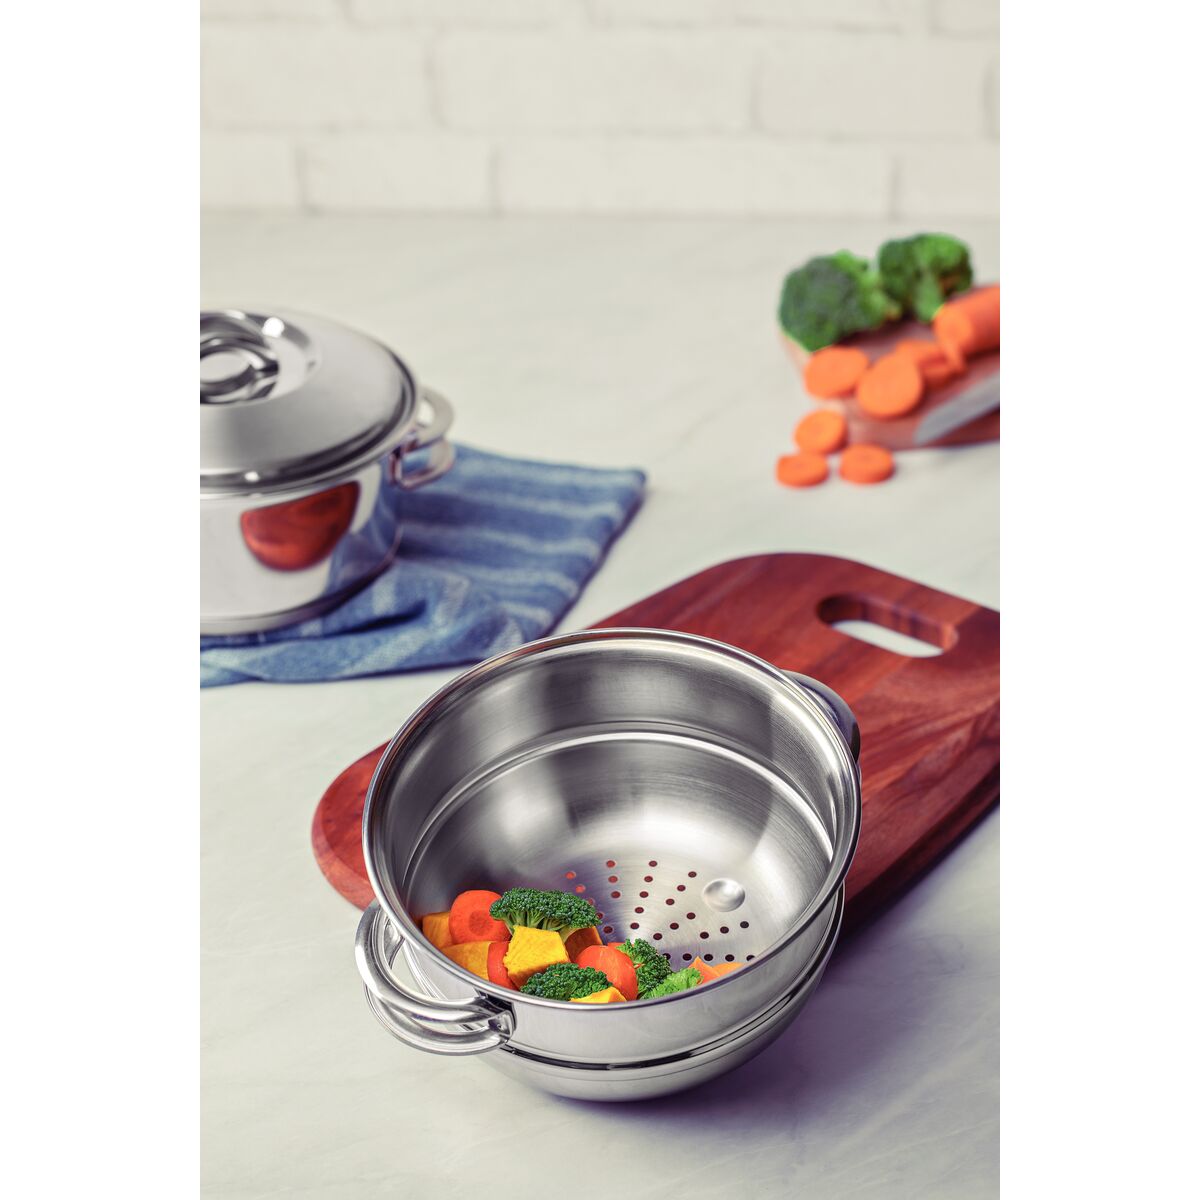 Tramontina - ¿Sabías que las ollas de acero inoxidable Tramontina pueden  usarse en todo tipo de cocinas? Ya sea a gas, vitrocerámica o de inducción,  distribuyen el calor de manera eficiente ahorrando